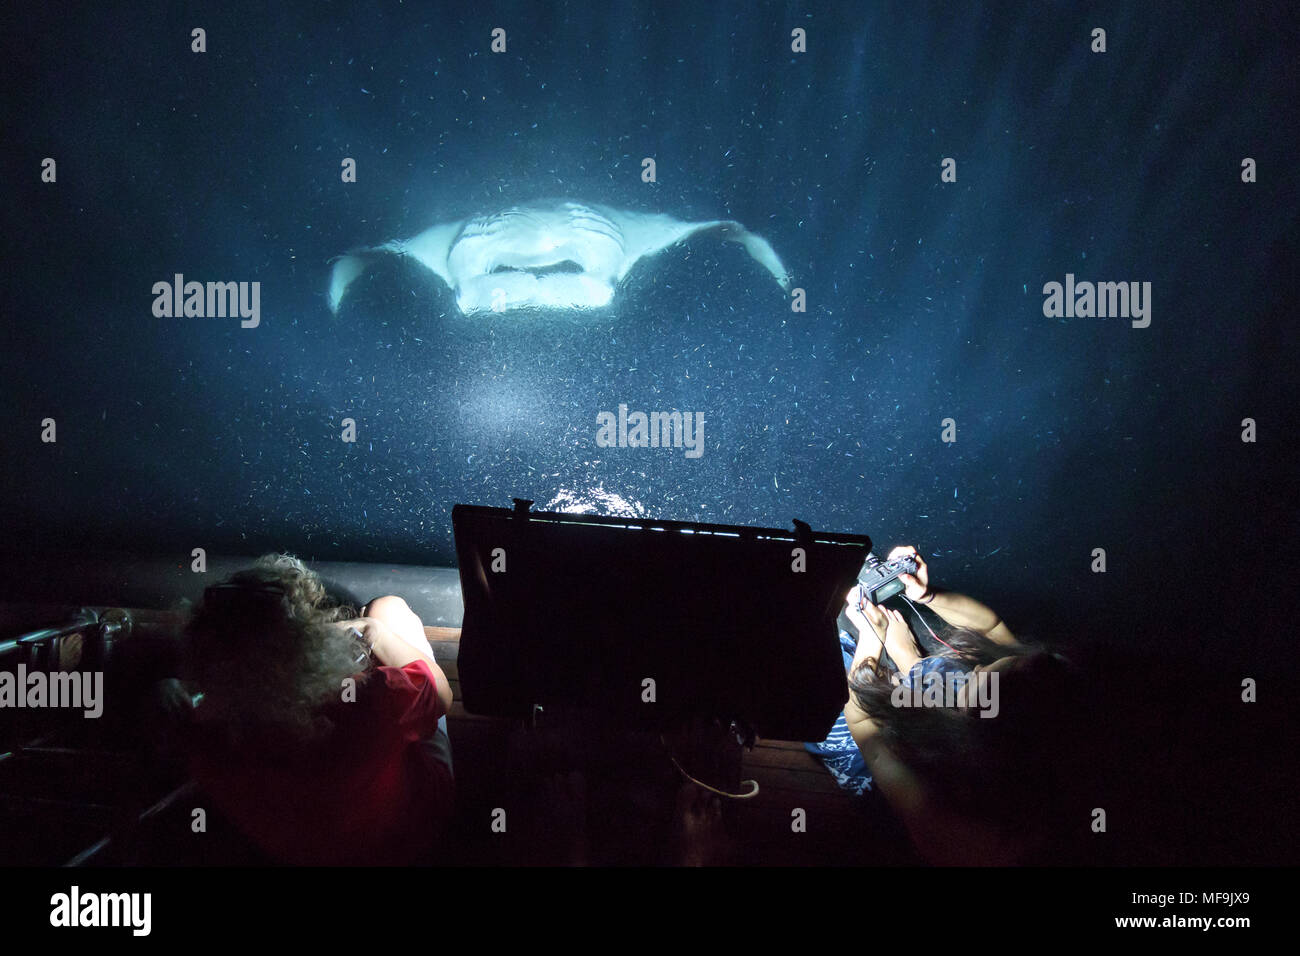 Manta Ray grand la bouche grande ouverte se nourrit de plancton dans la nuit derrière bateau que les gens regardent Banque D'Images